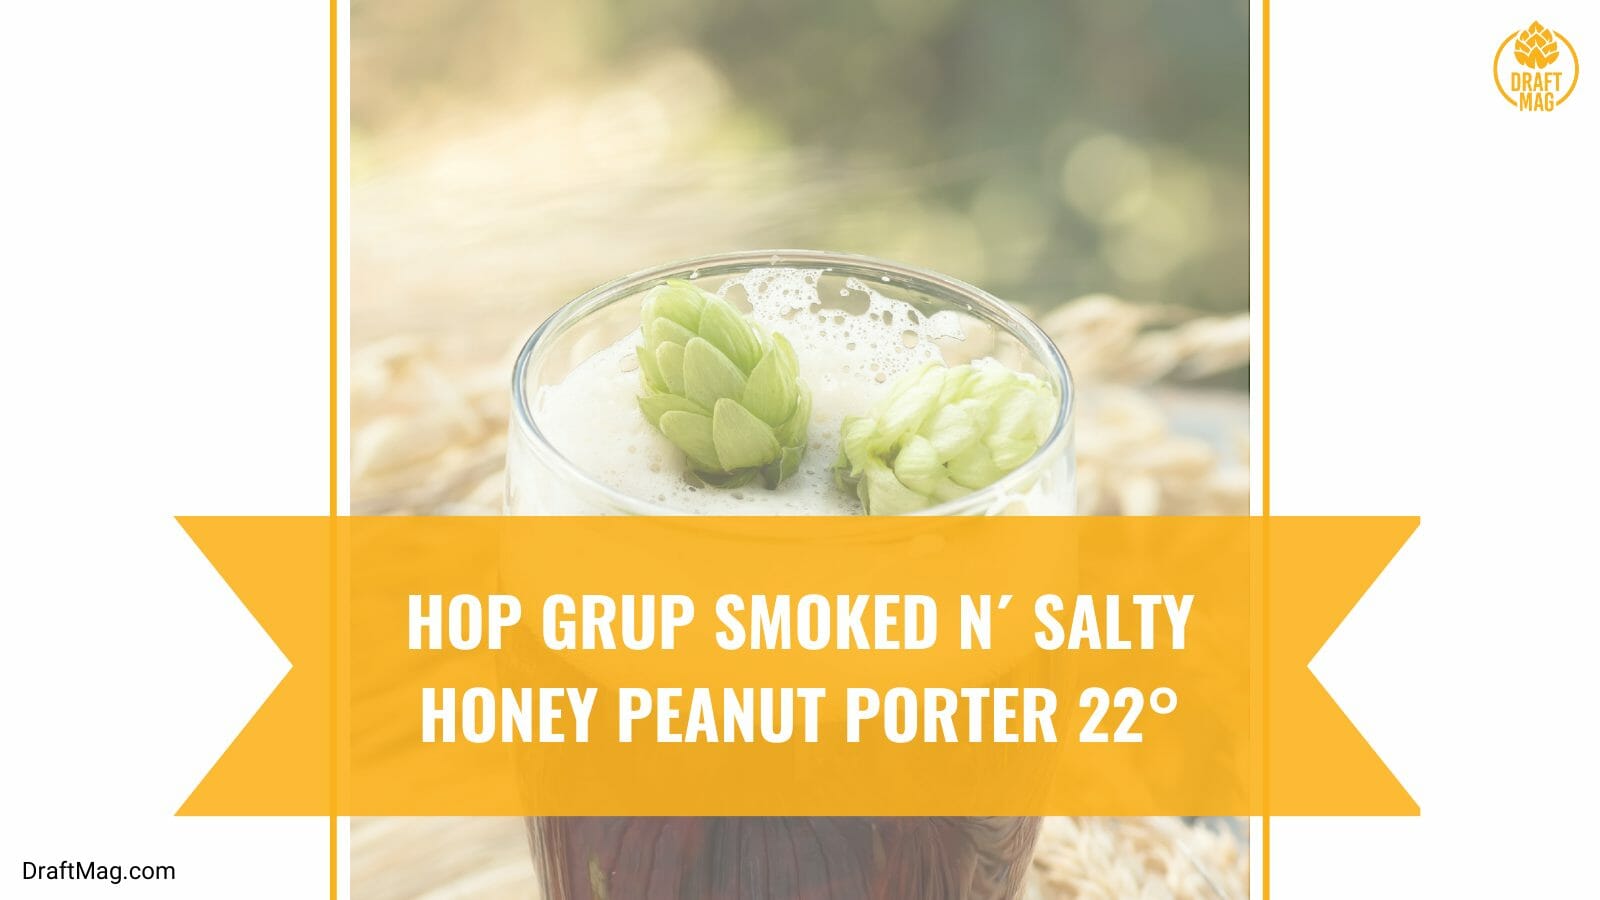 Smoked N Salty Honey Peanut 22 Celcius